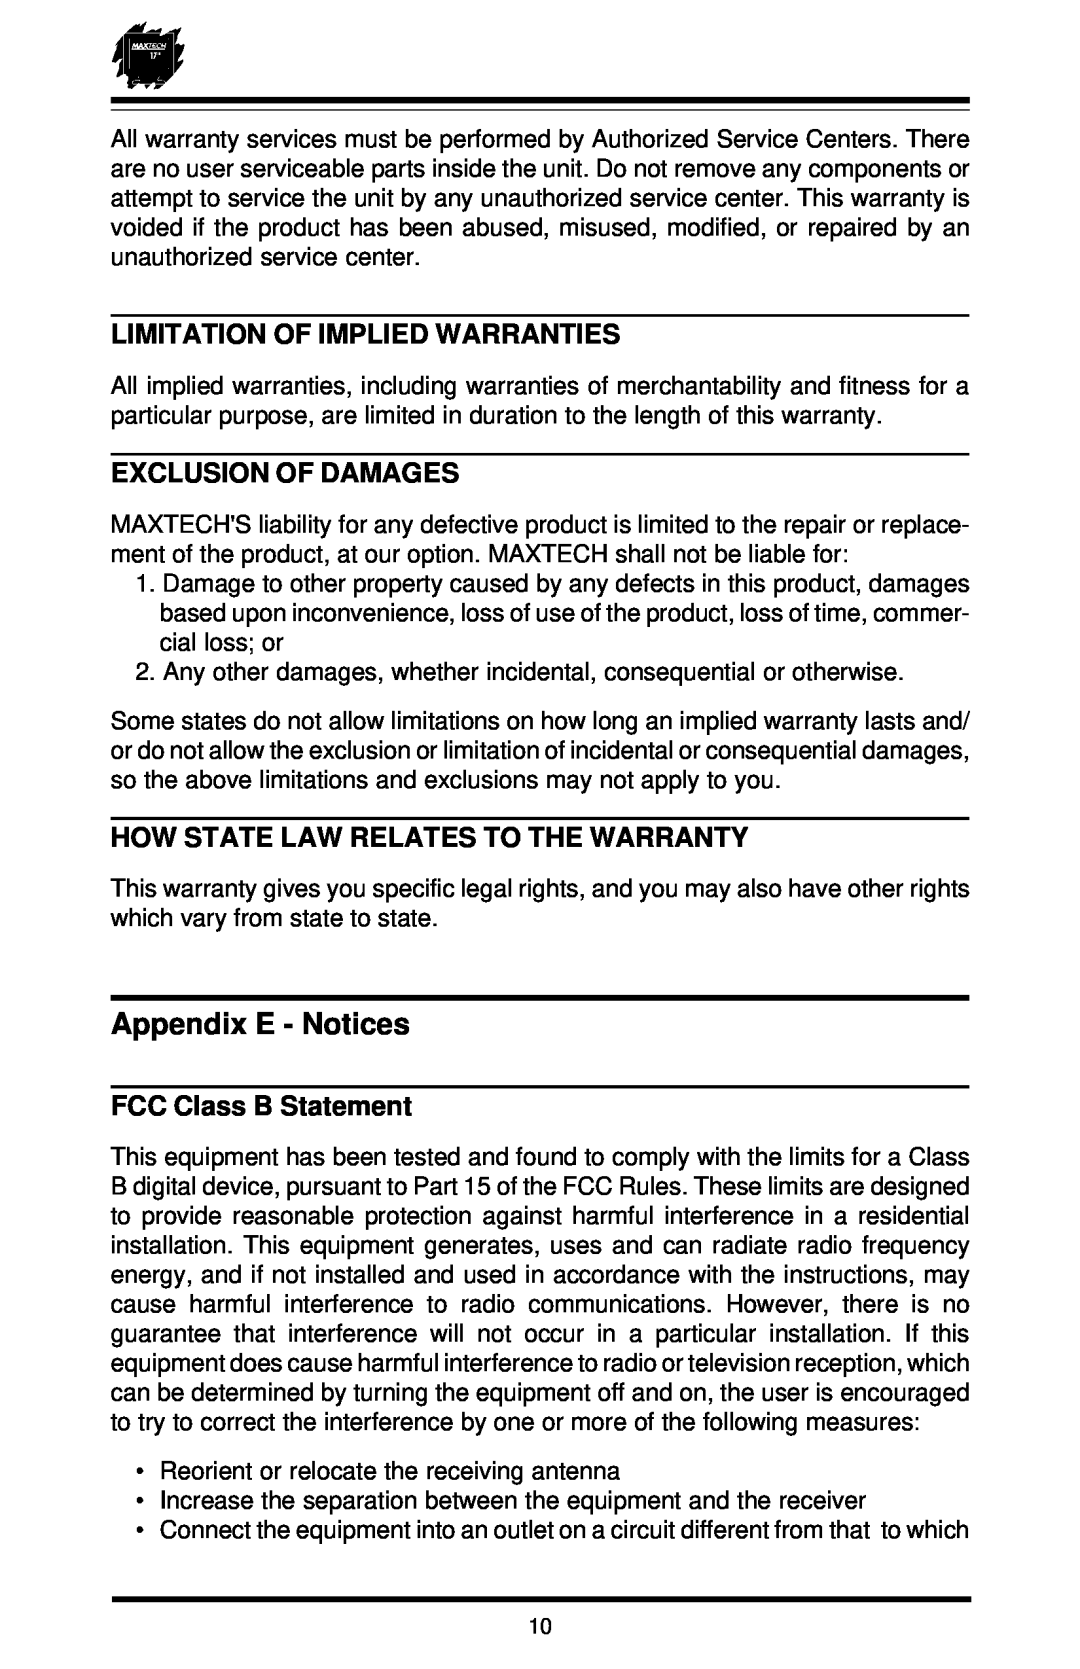 MaxTech XT-7871 Appendix E - Notices, Limitation Of Implied Warranties, Exclusion Of Damages, FCC Class B Statement 